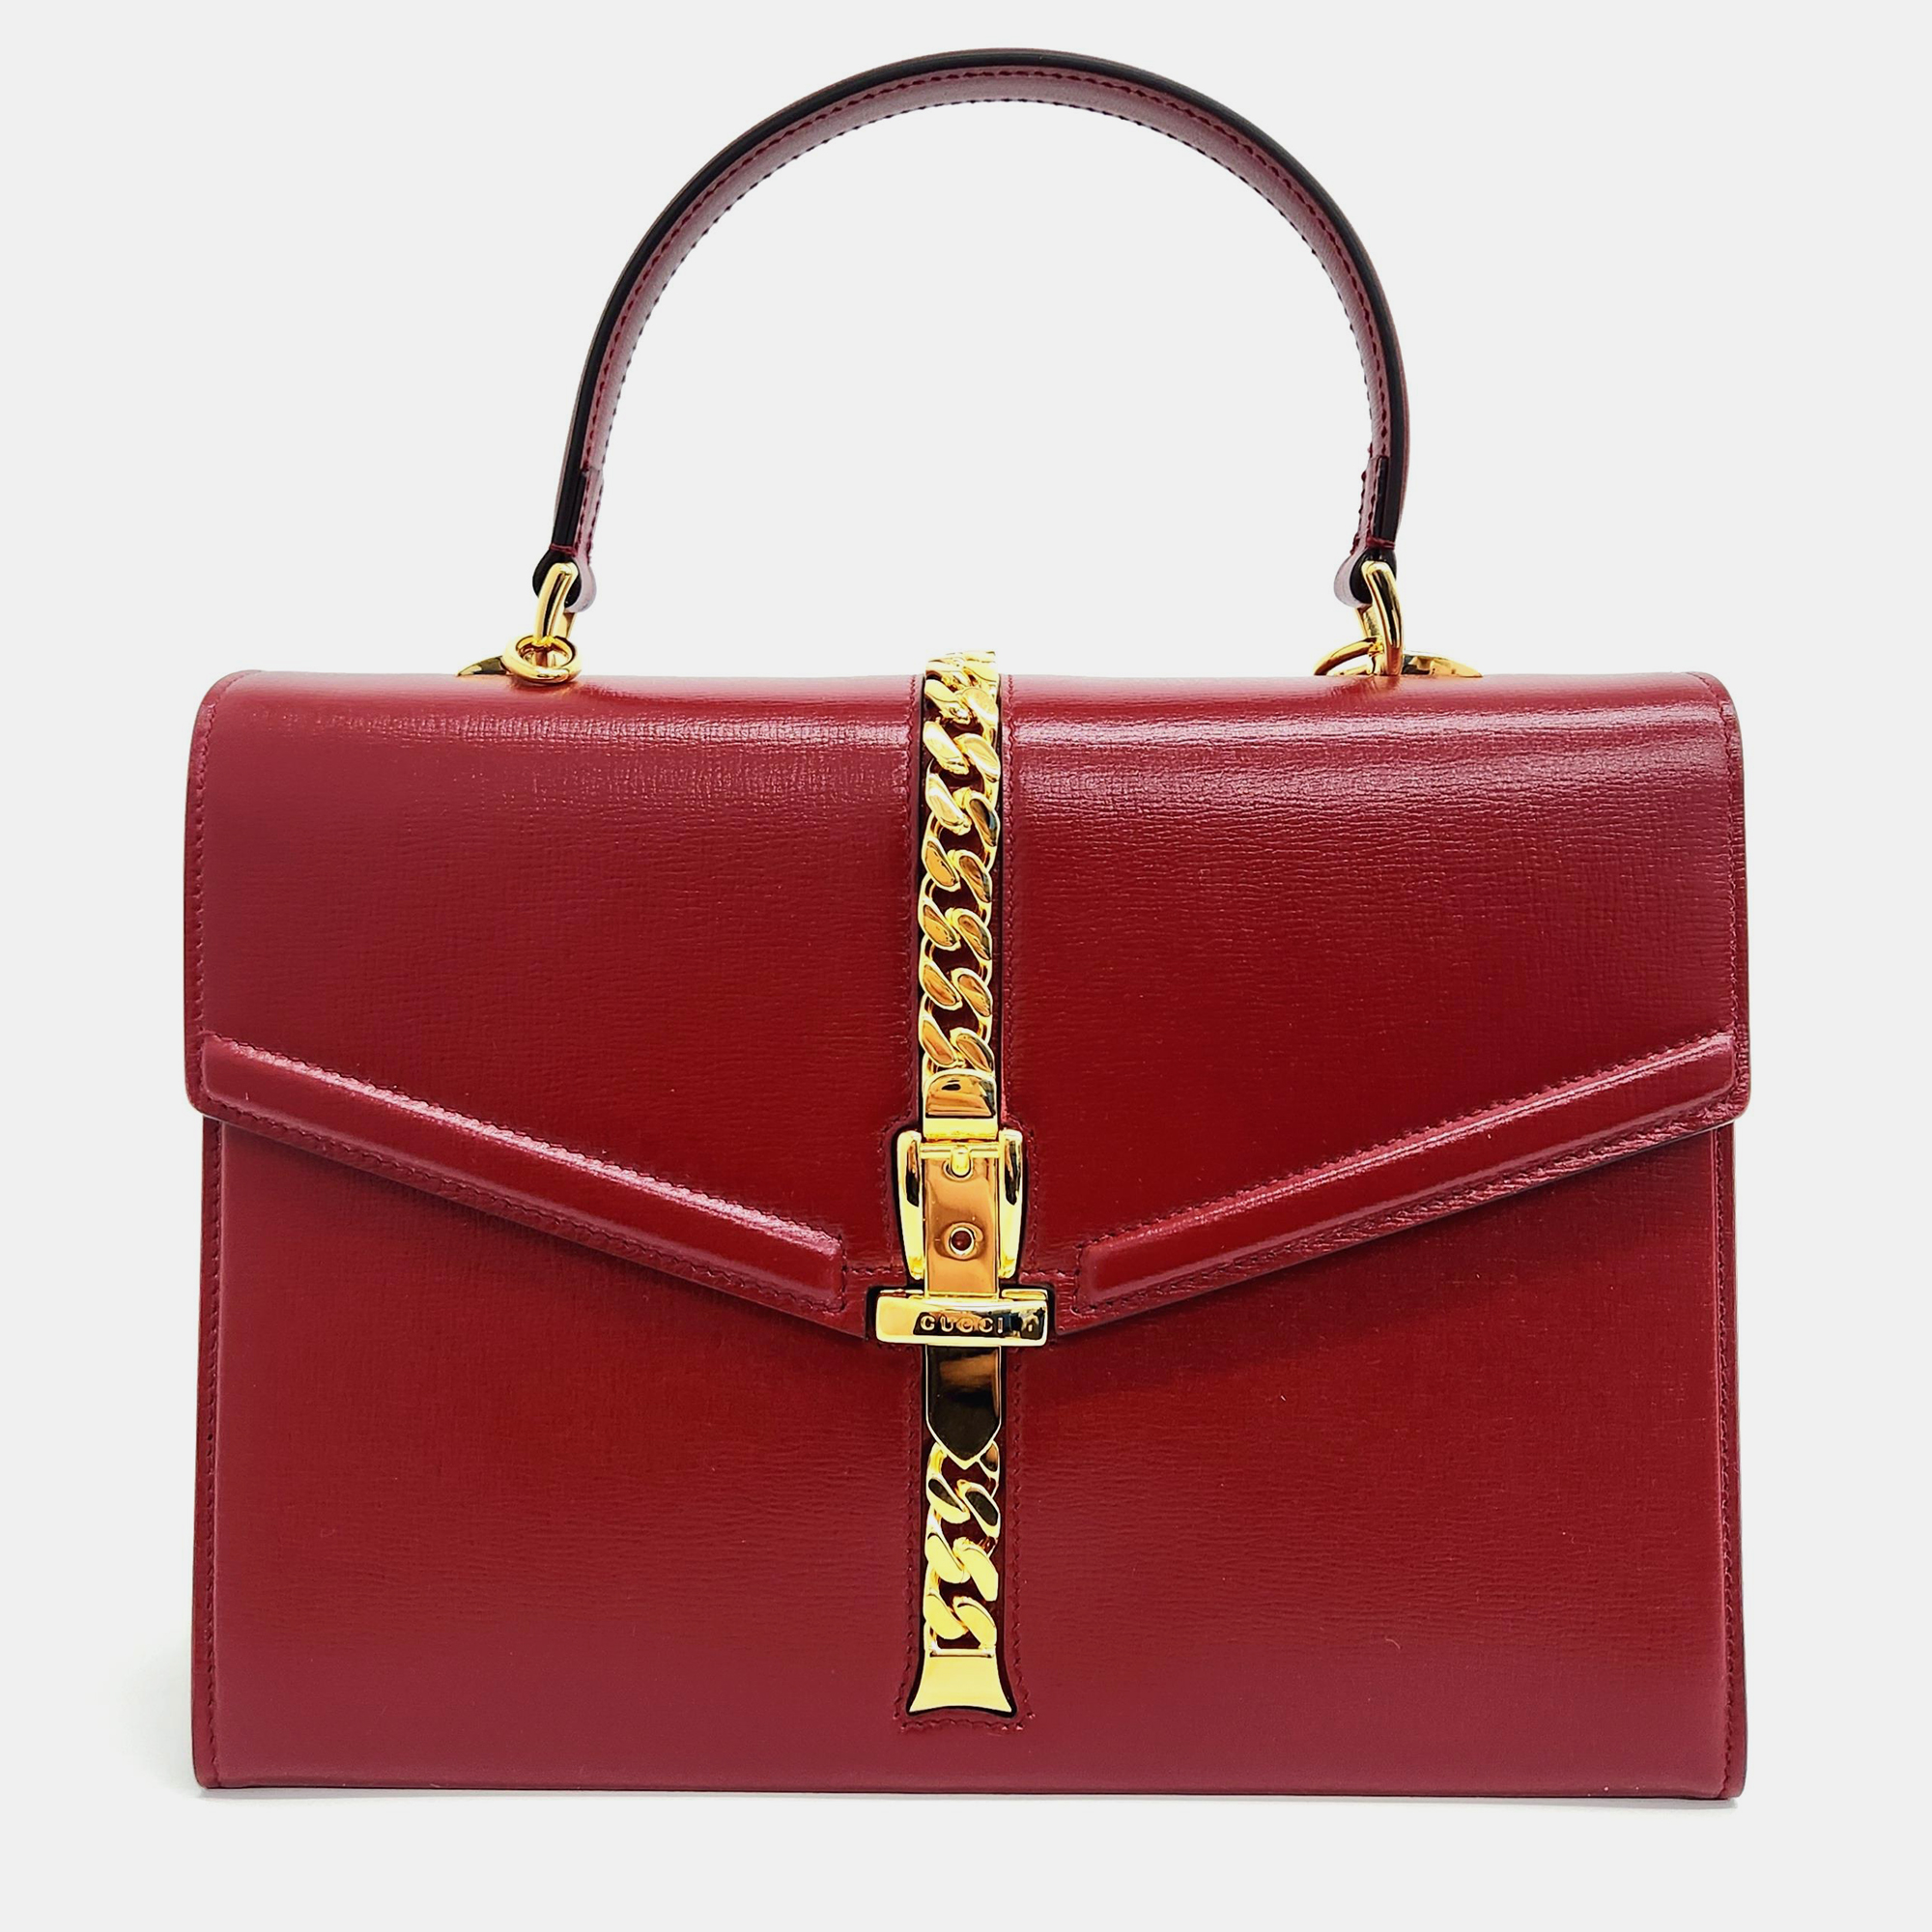 Gucci sylvie 1969 top handle bag (602781)